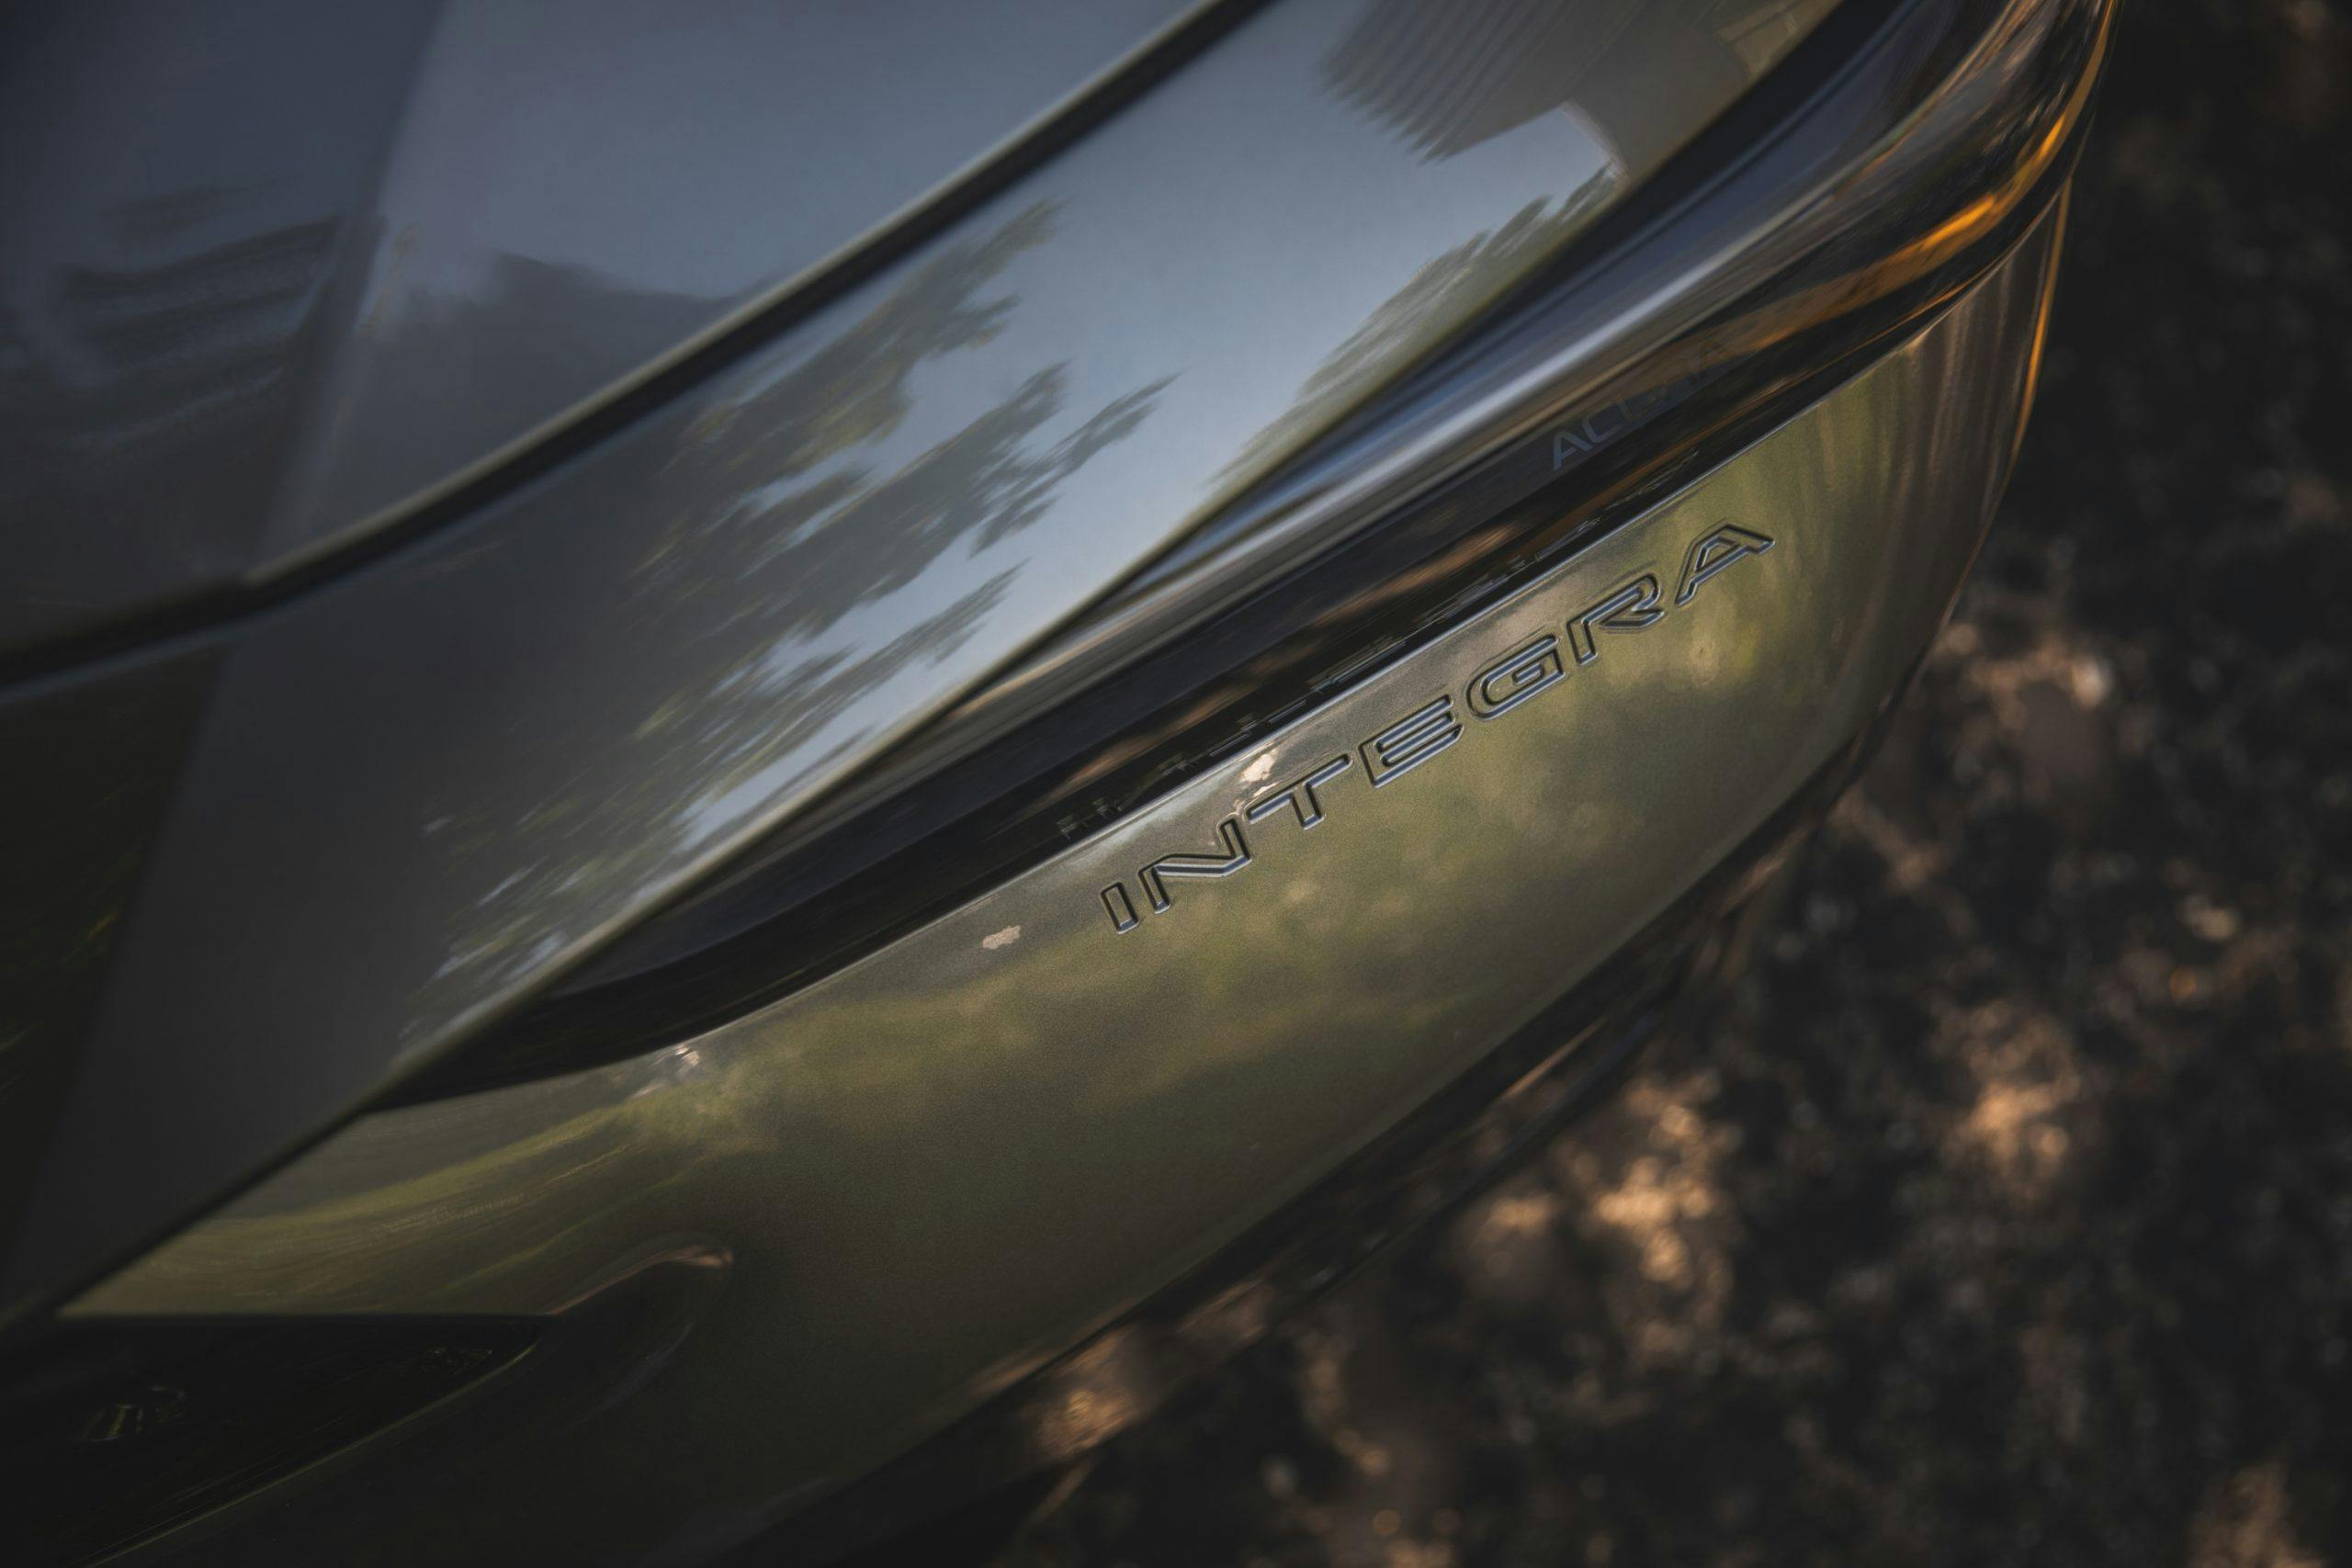 2023 Acura Integra A-Spec rear badge imprint detail